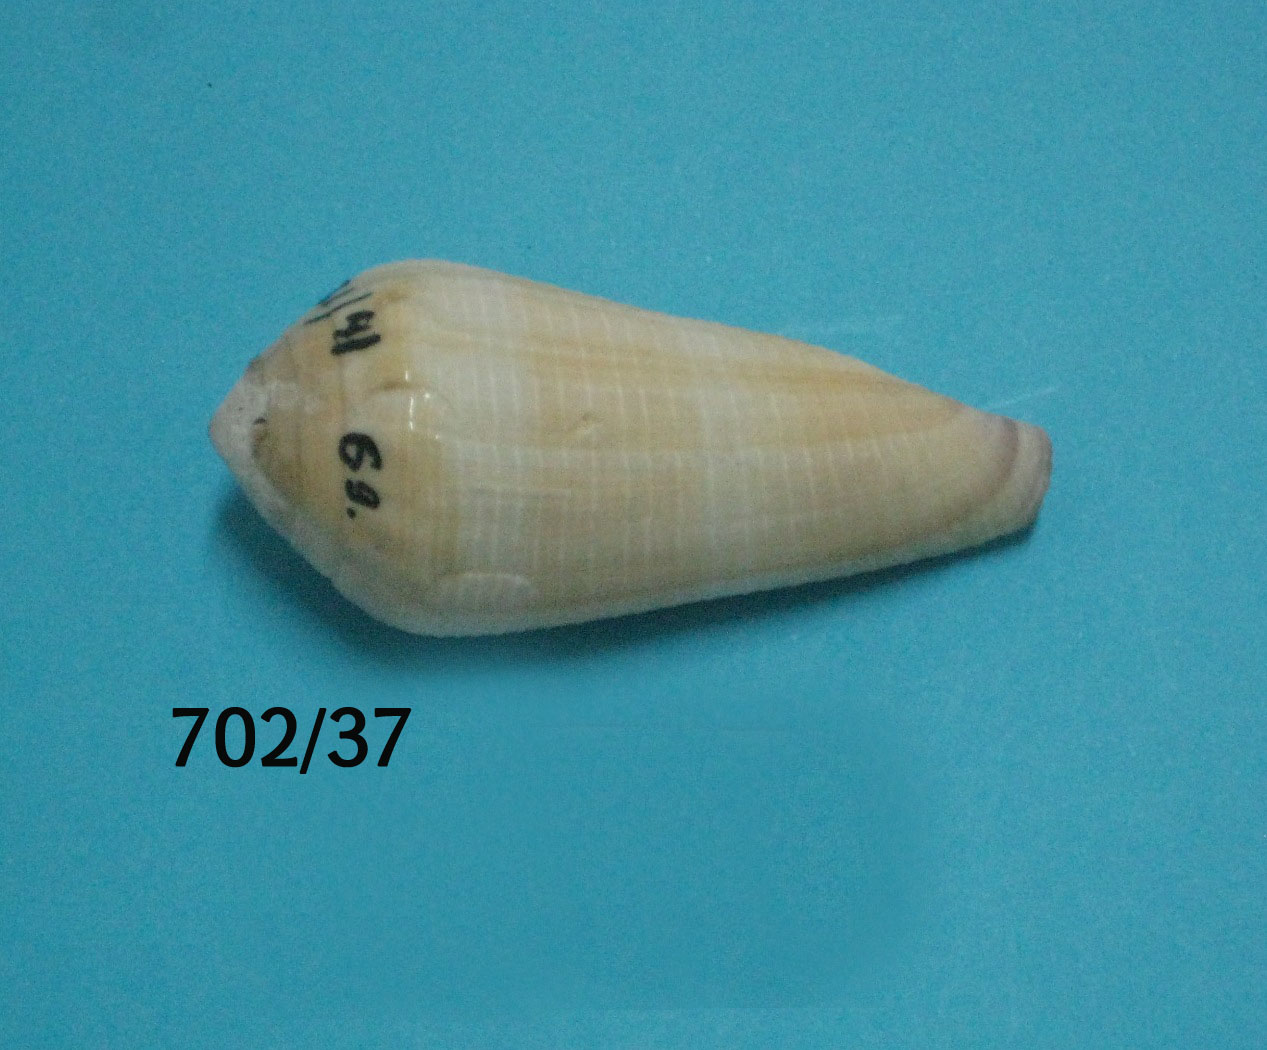 Conus terebra